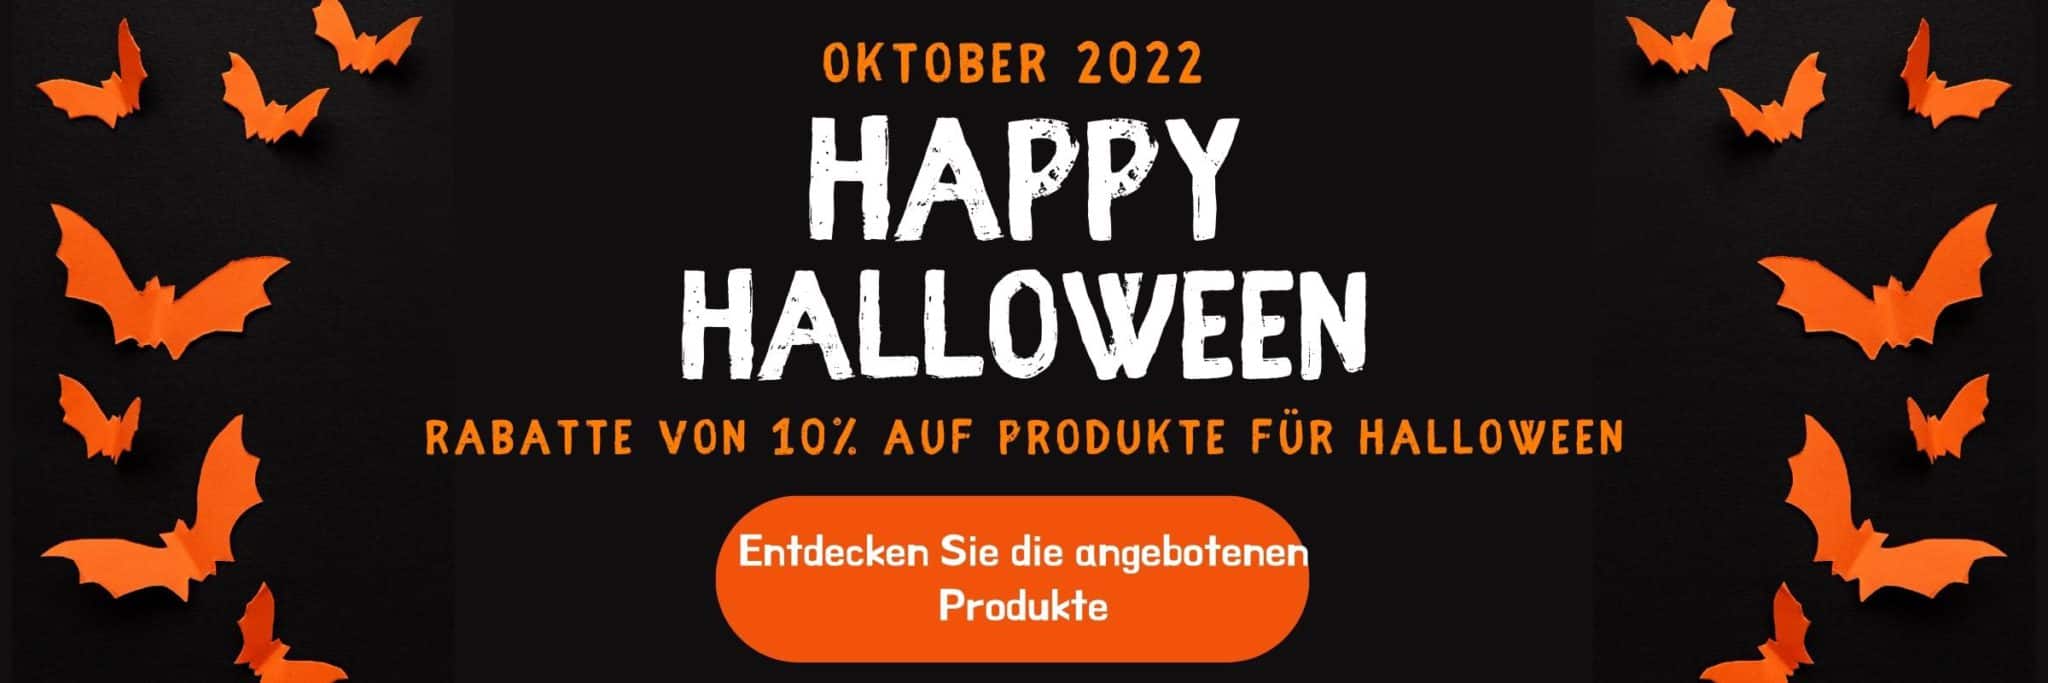 Banner-desktop-foodaloo-halloween-2022-it